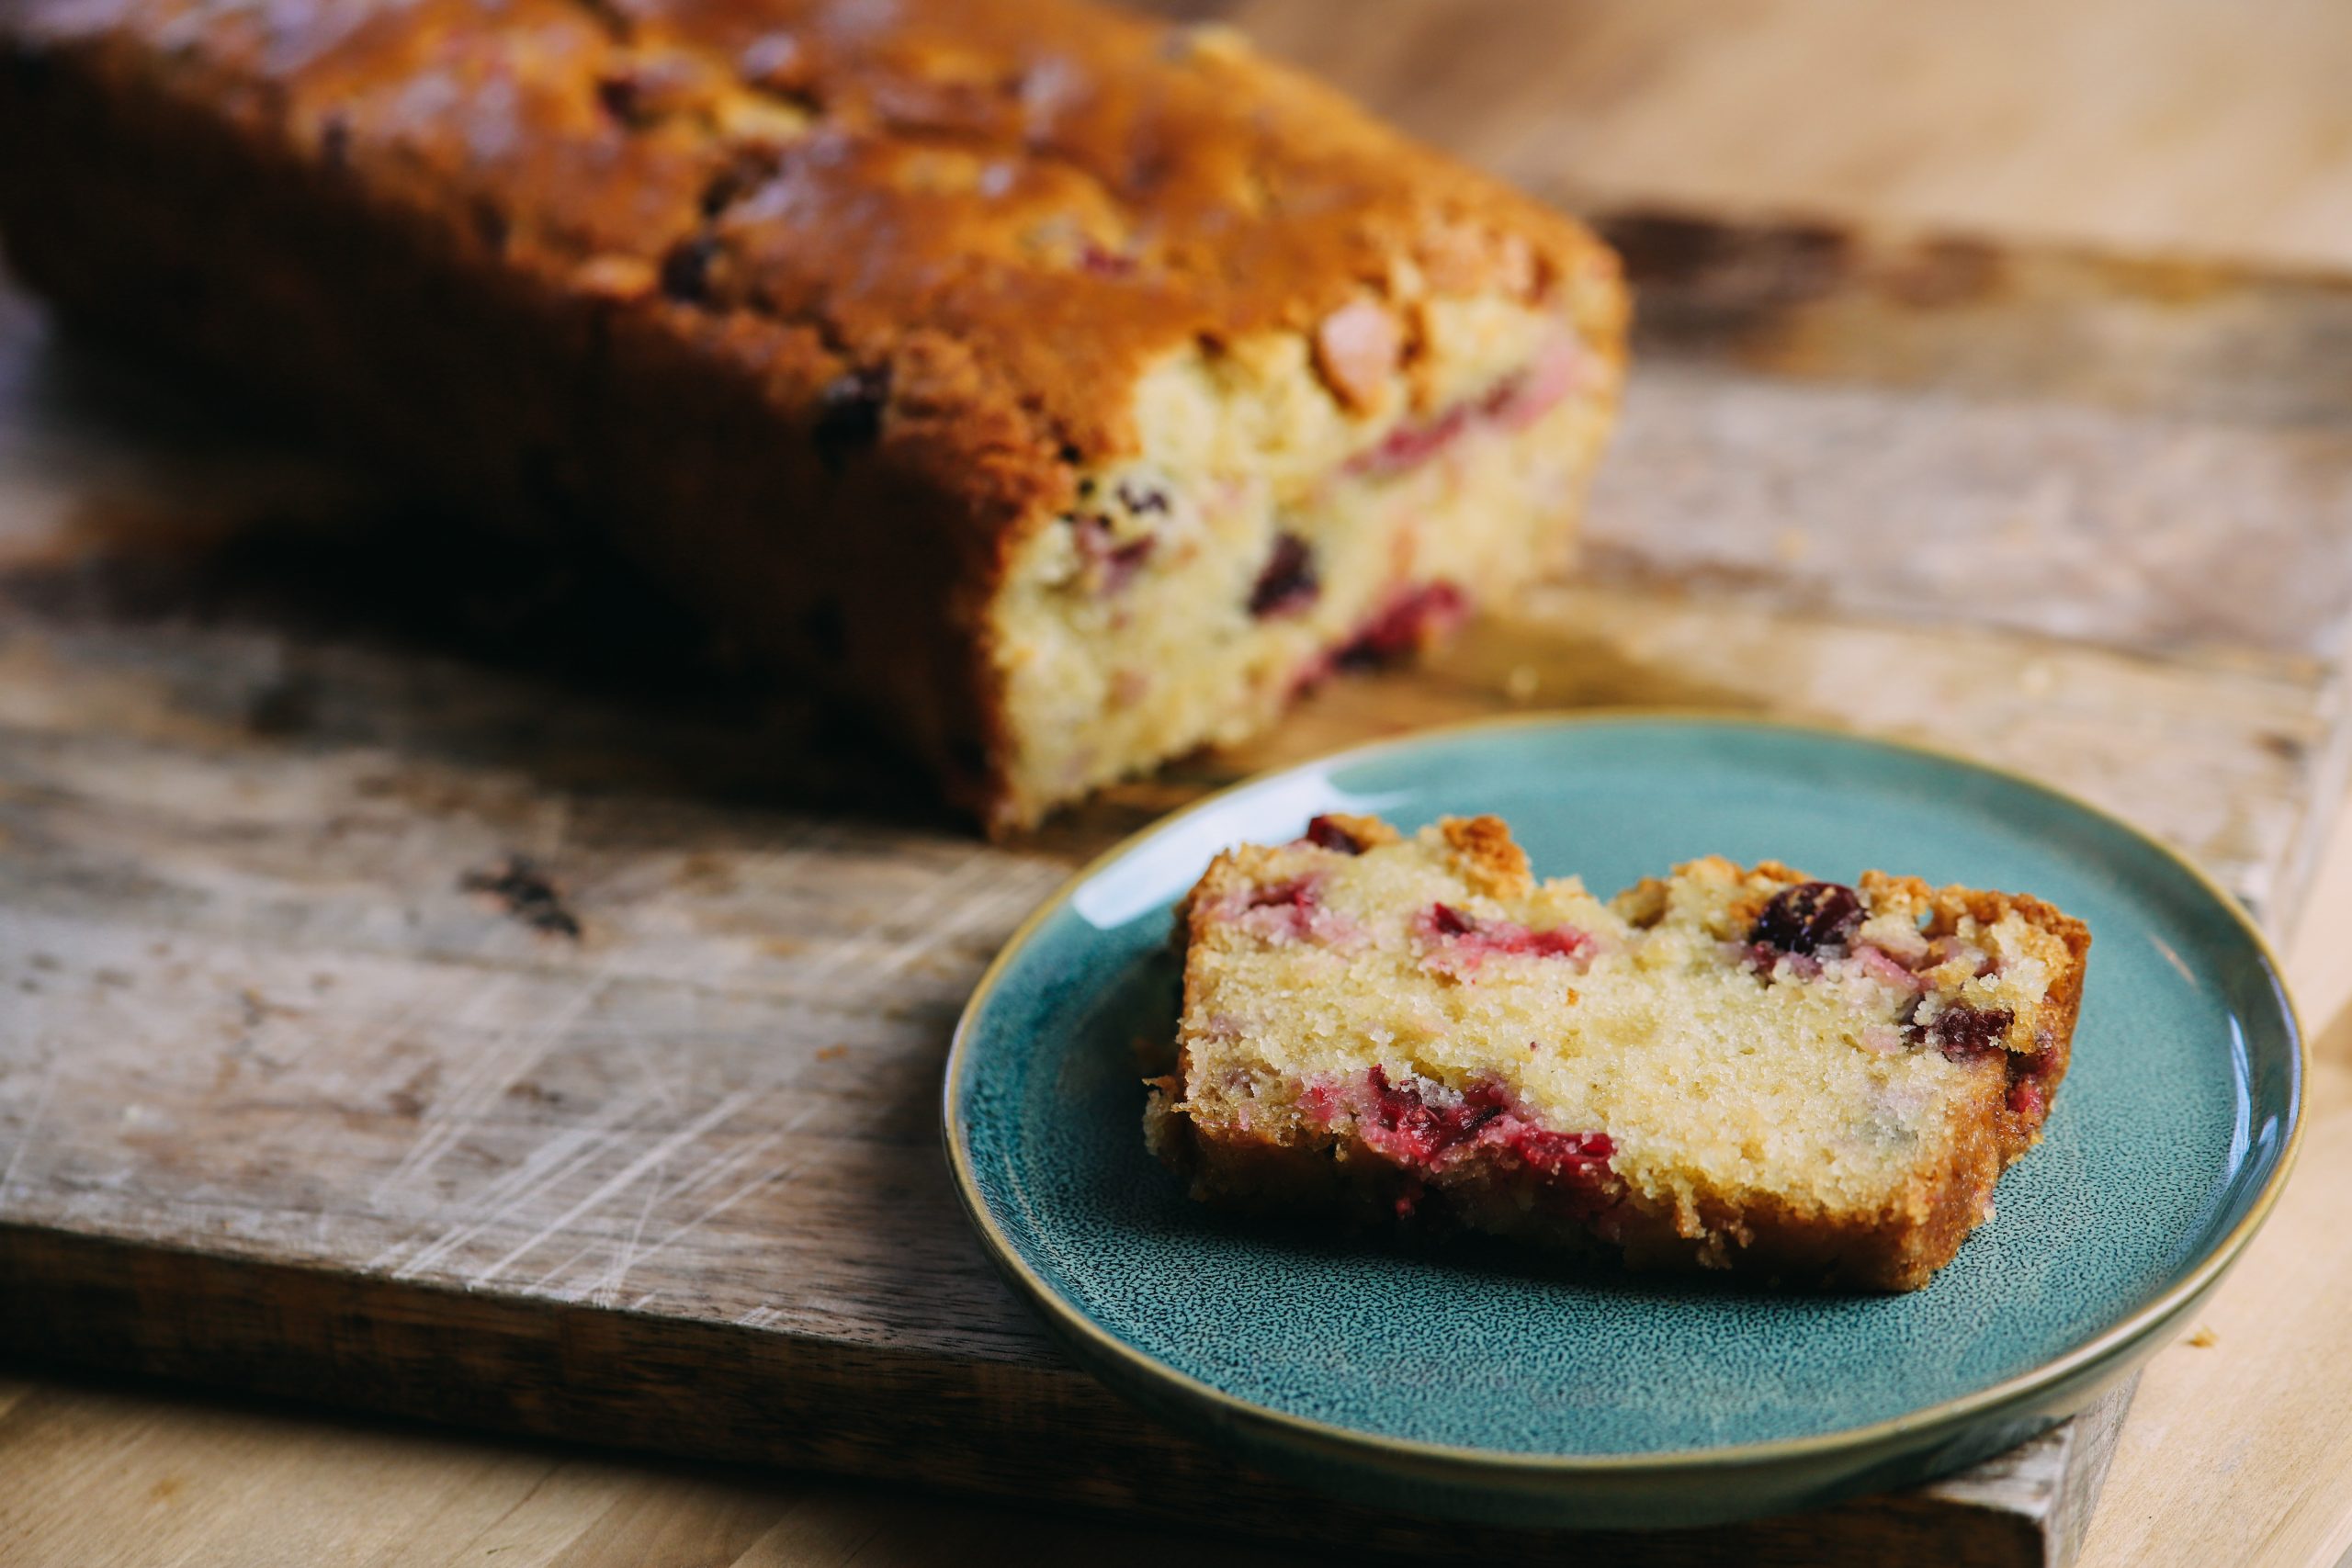 Recept om zelf een lekker en makkelijke vegan cranberry cake te maken ook wel cranberry bread genoemd